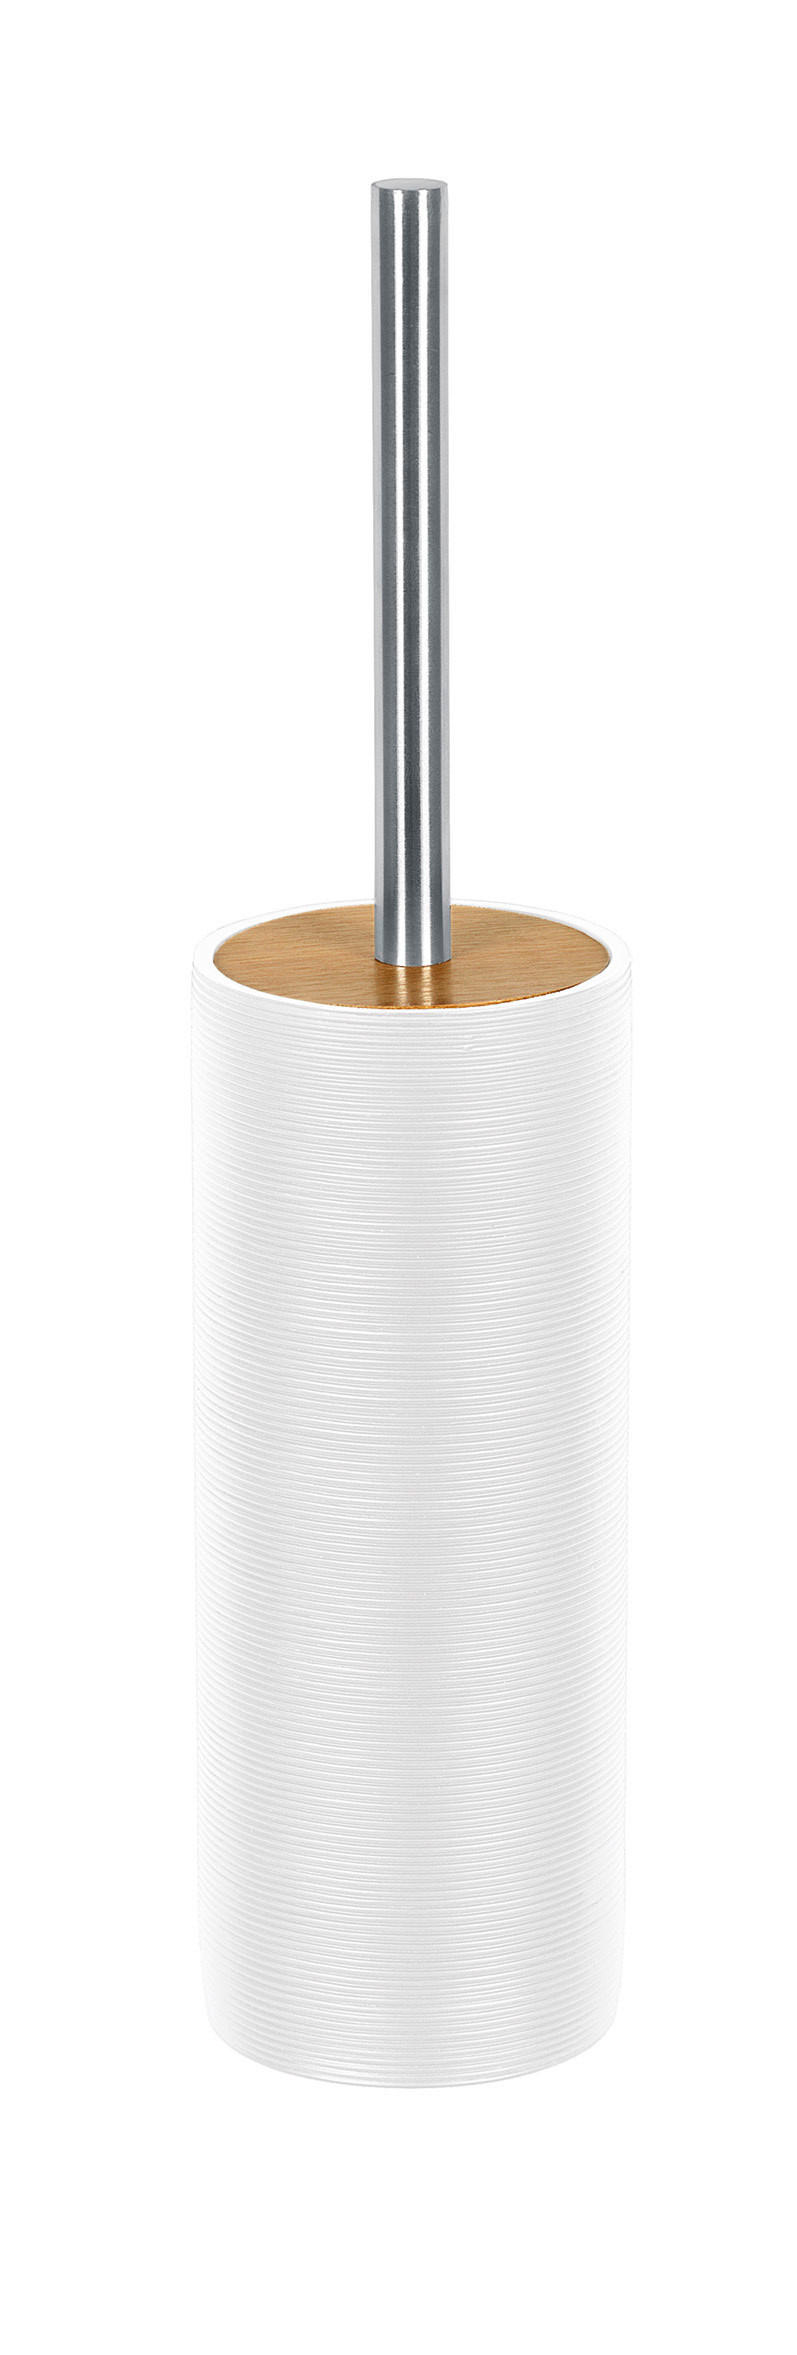 WC SADA - ŠTĚTKA A DRŽÁK - bílá/barvy stříbra, Basics, kov/dřevo (9/40cm) - Kleine Wolke